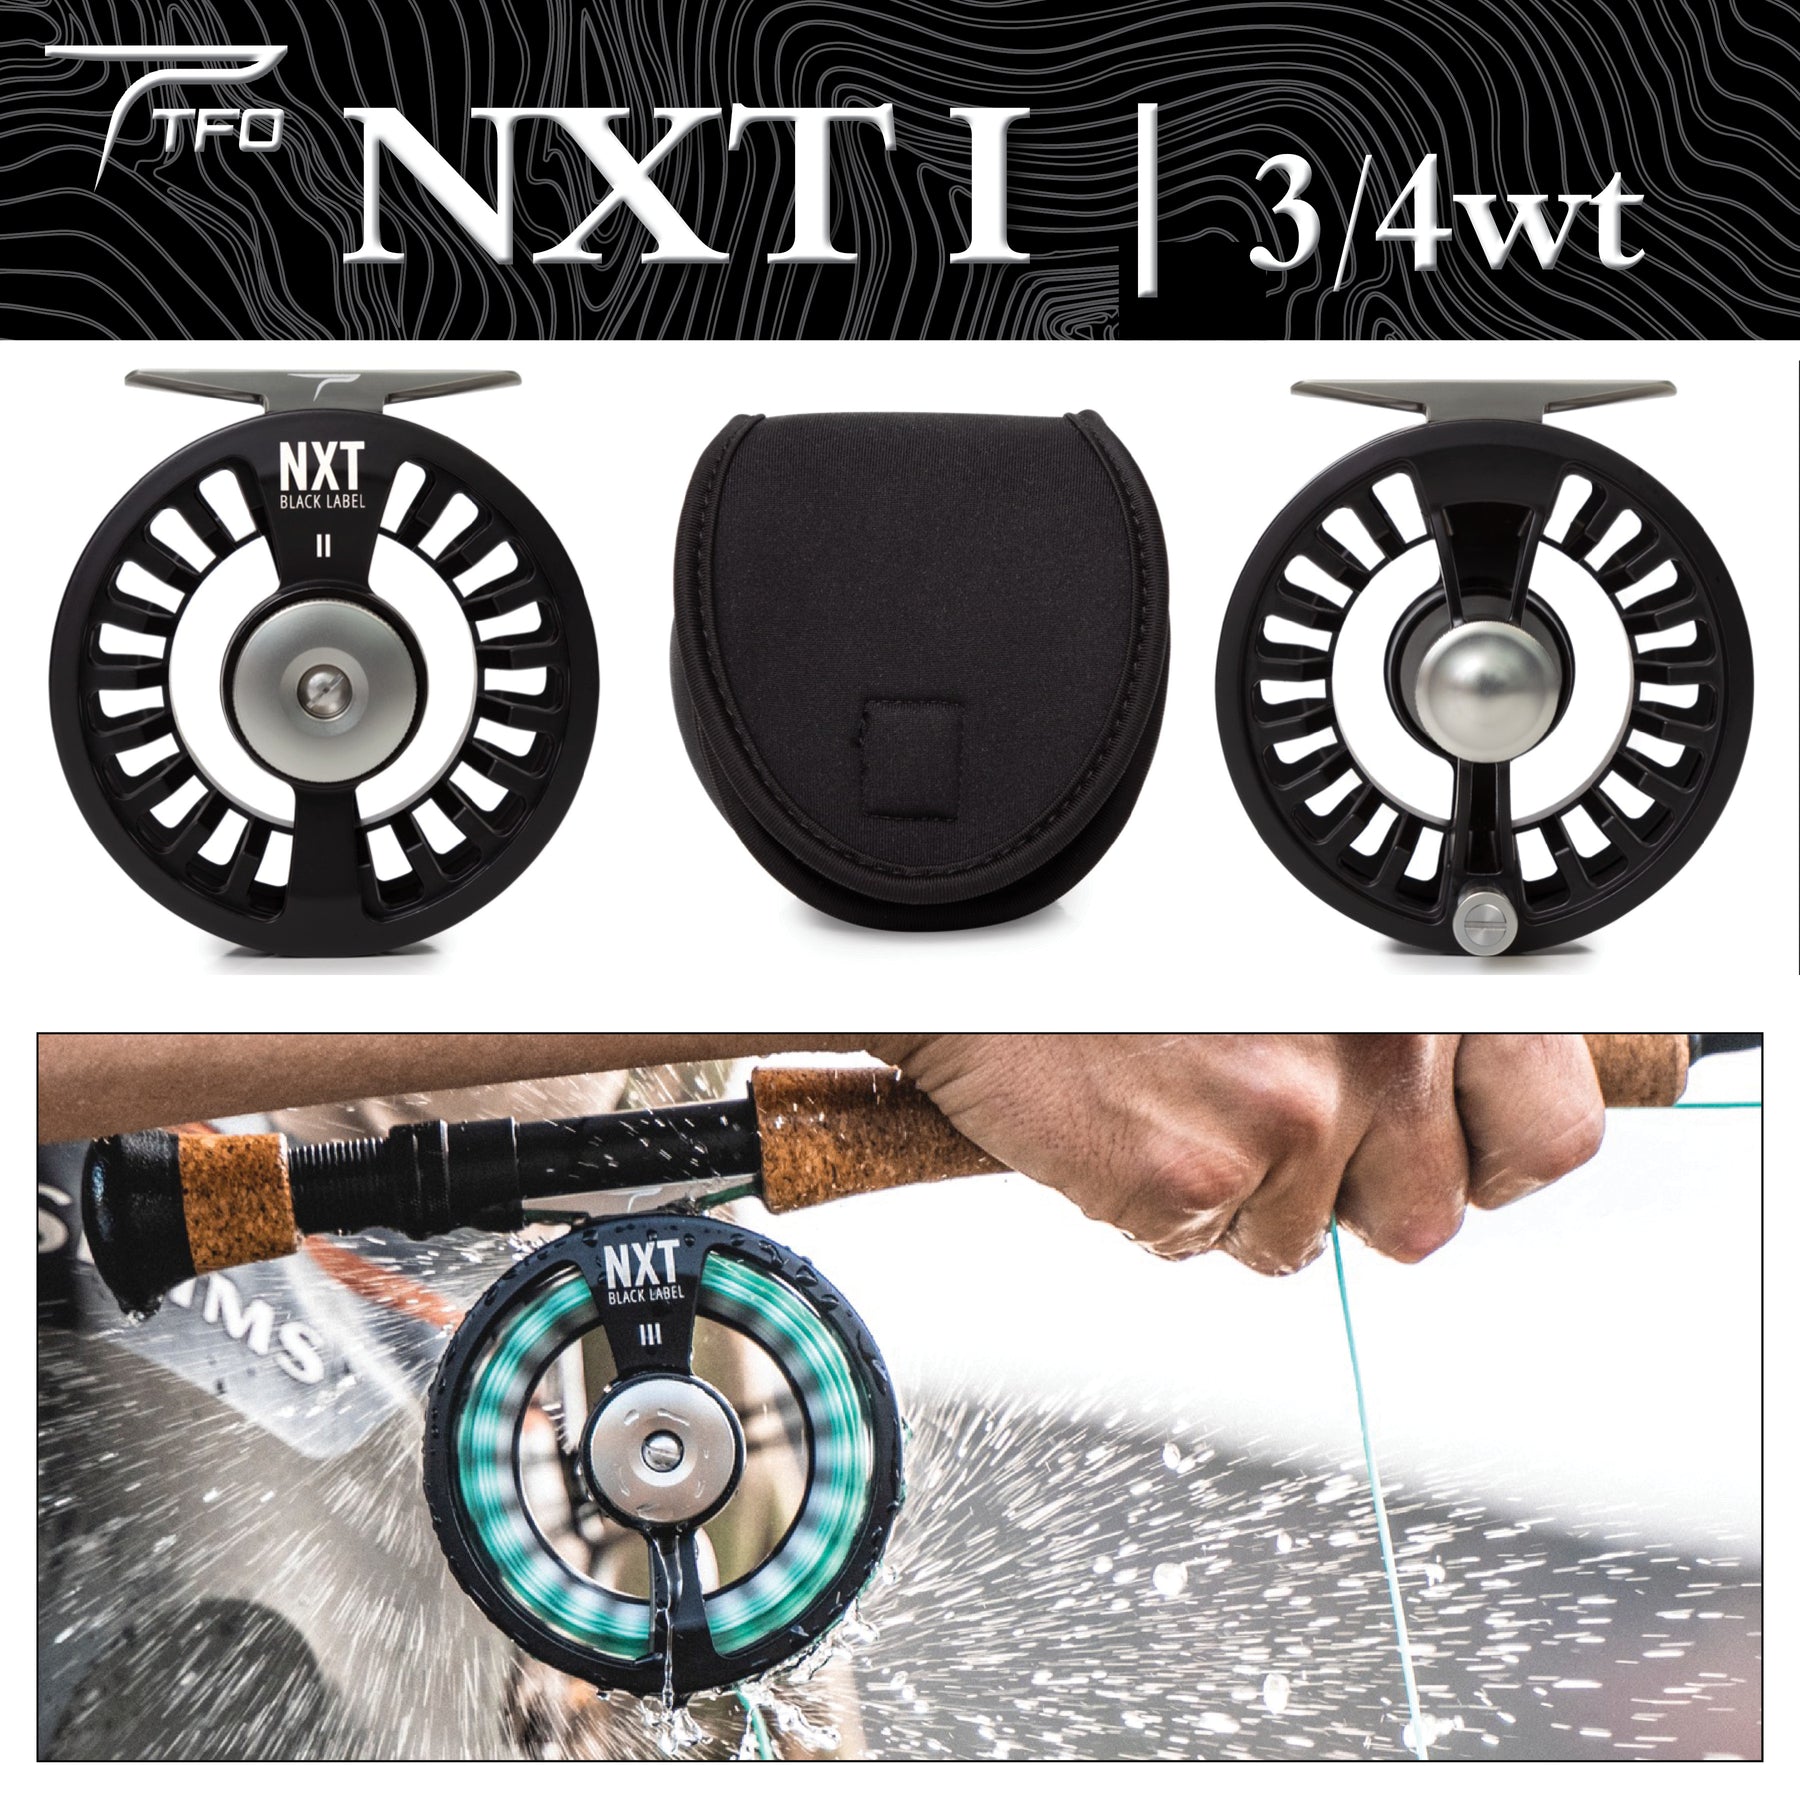 TFO NXT Black Label II 5/6wt Fly Reel – Raft & Fly Shop